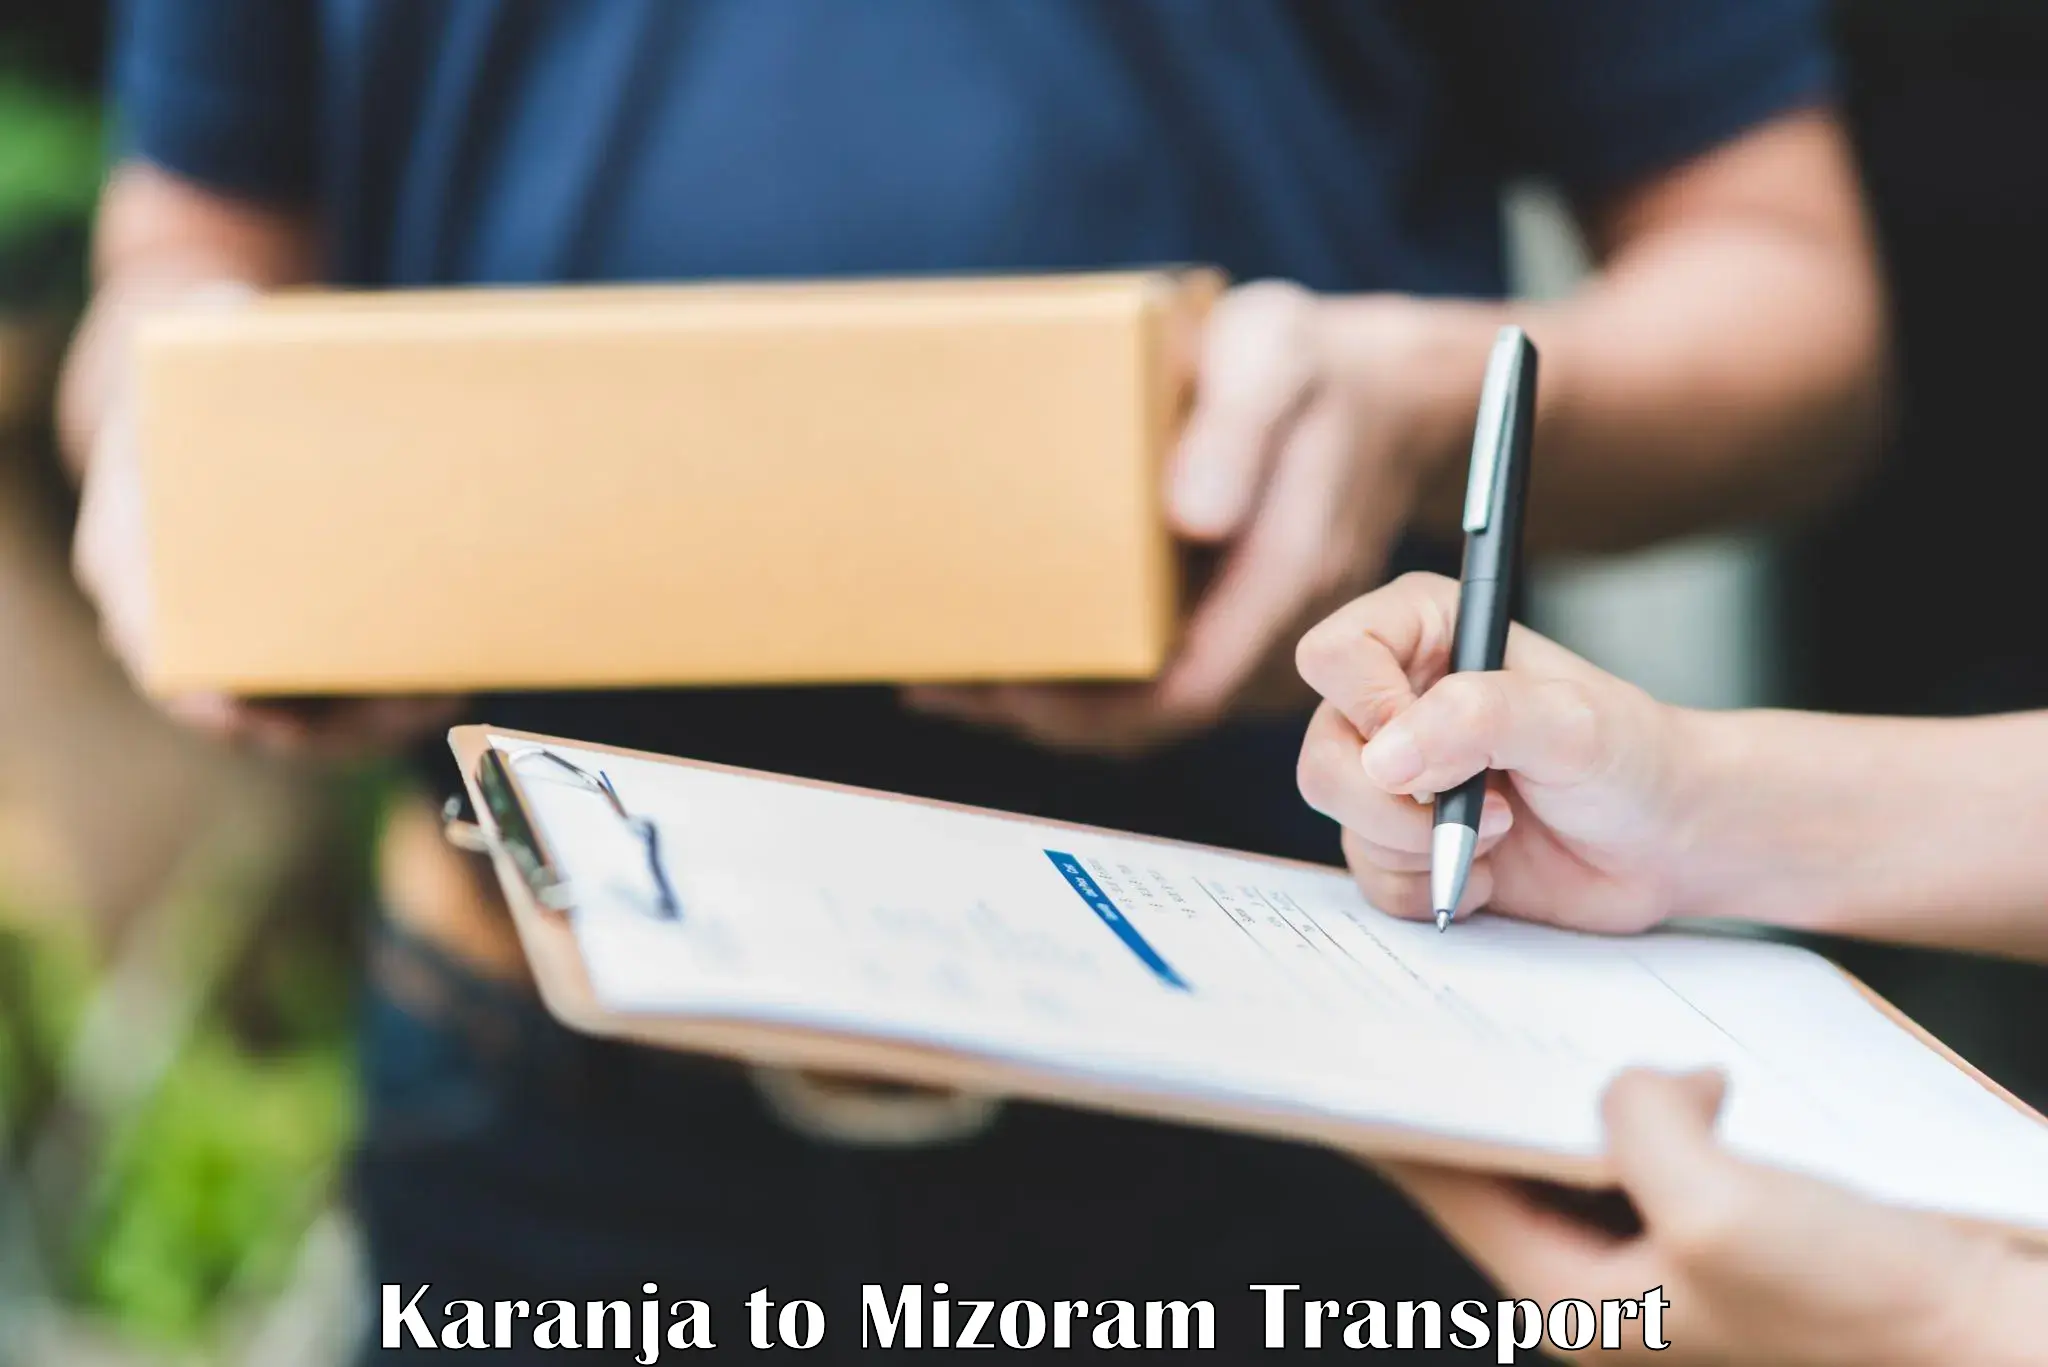 Nationwide transport services Karanja to Thenzawl